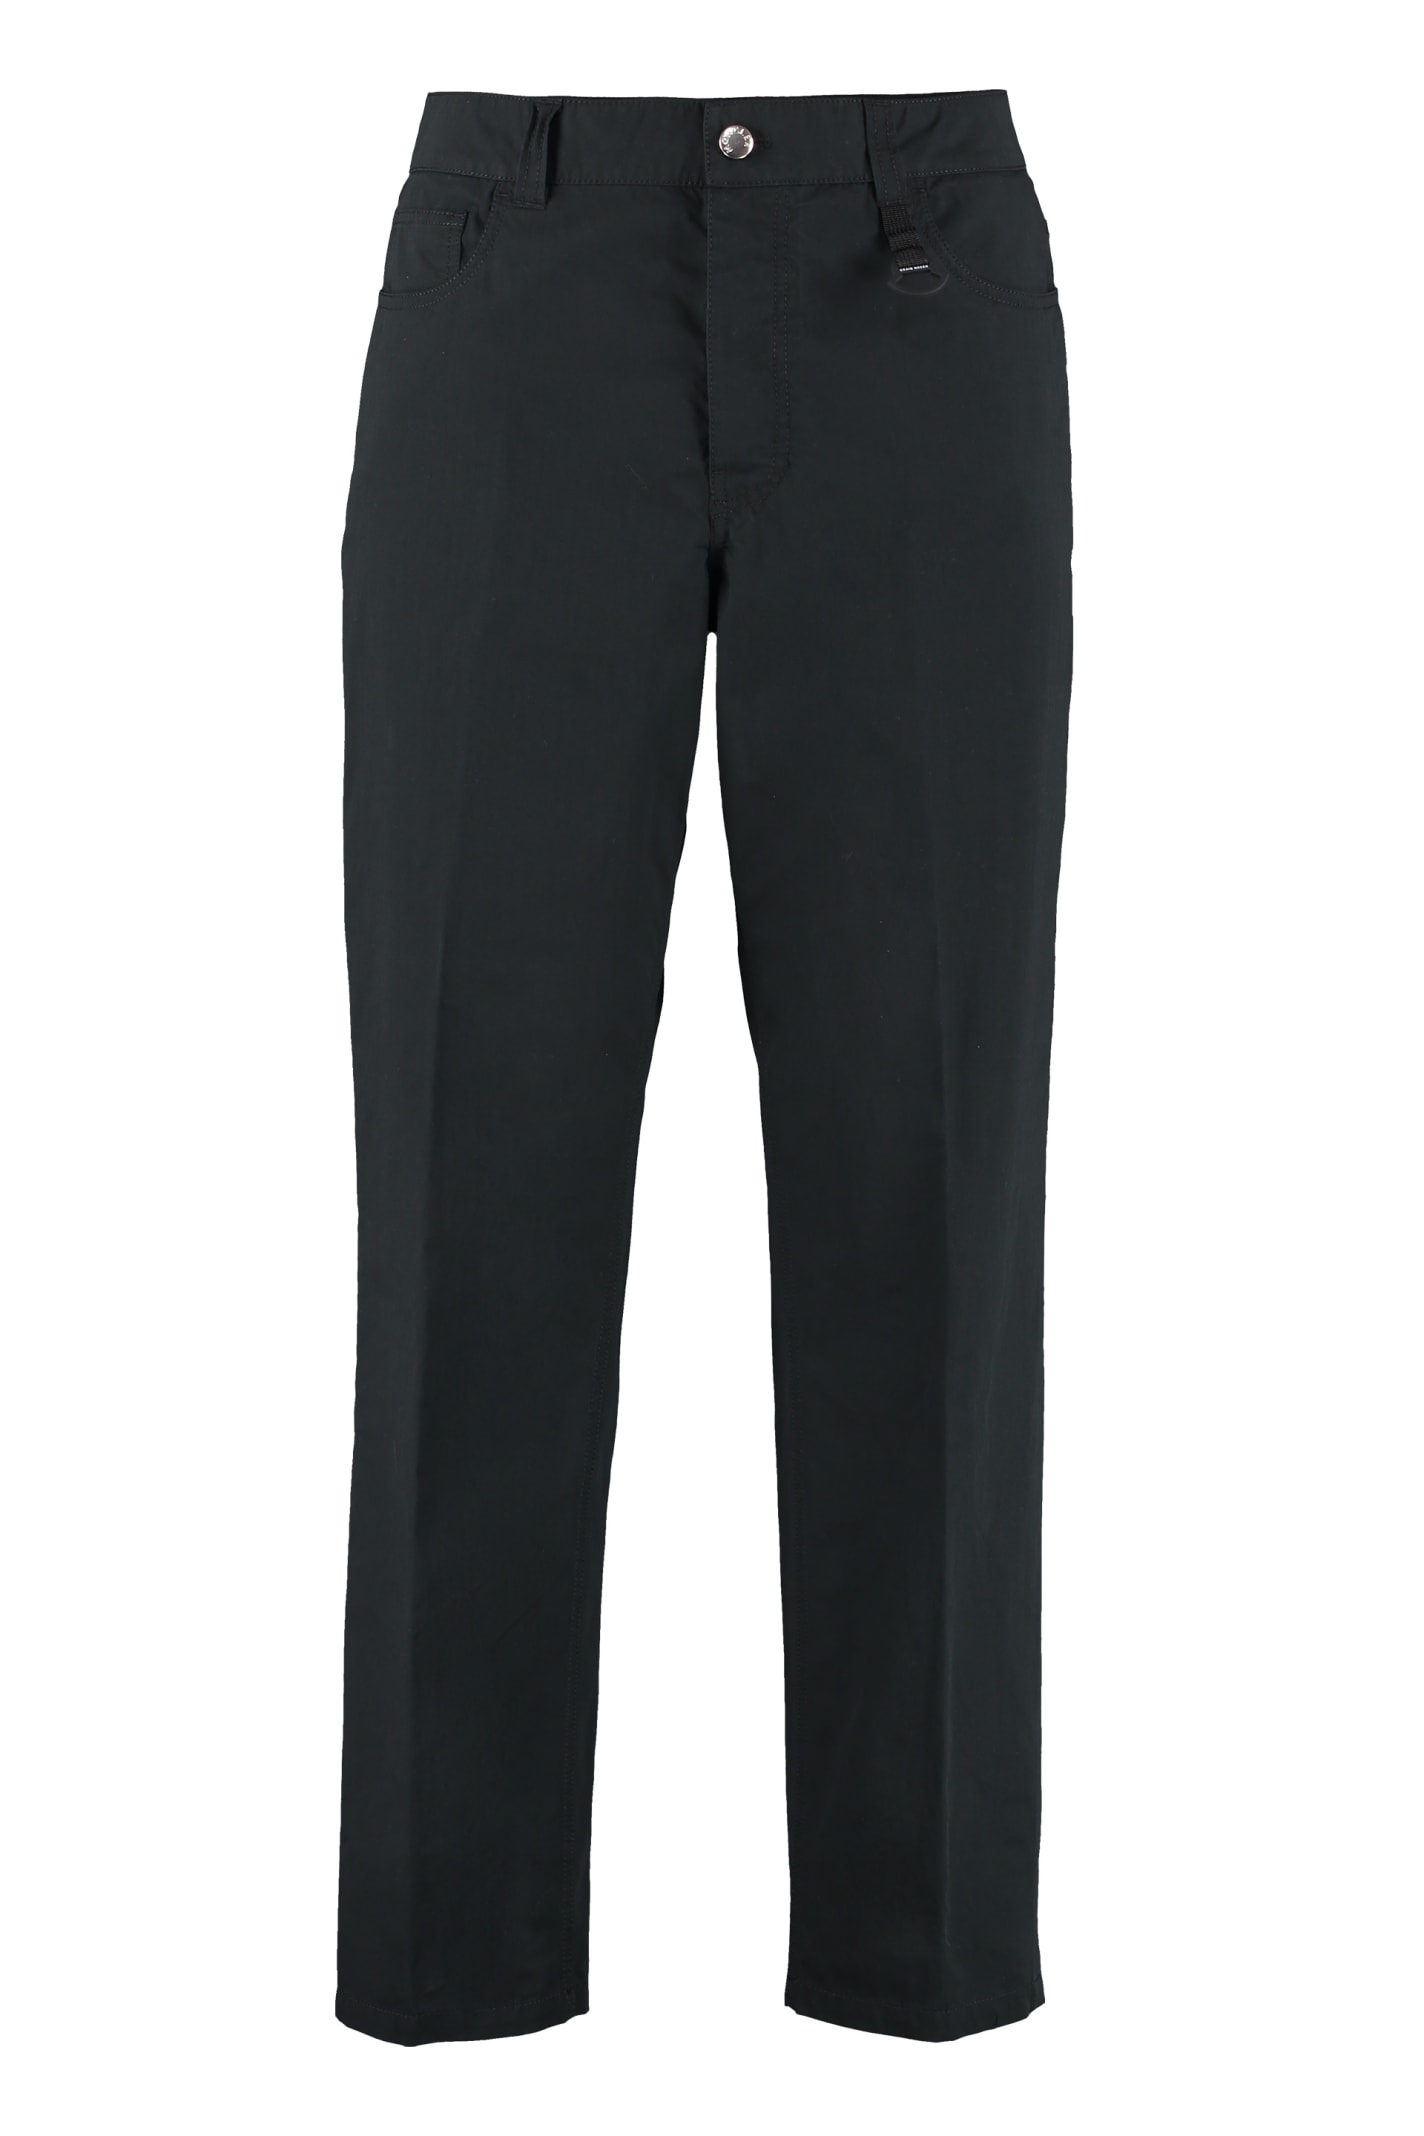 Moncler Genius 5 Moncler Craig Green - Cotton-blend Straight-leg Trousers